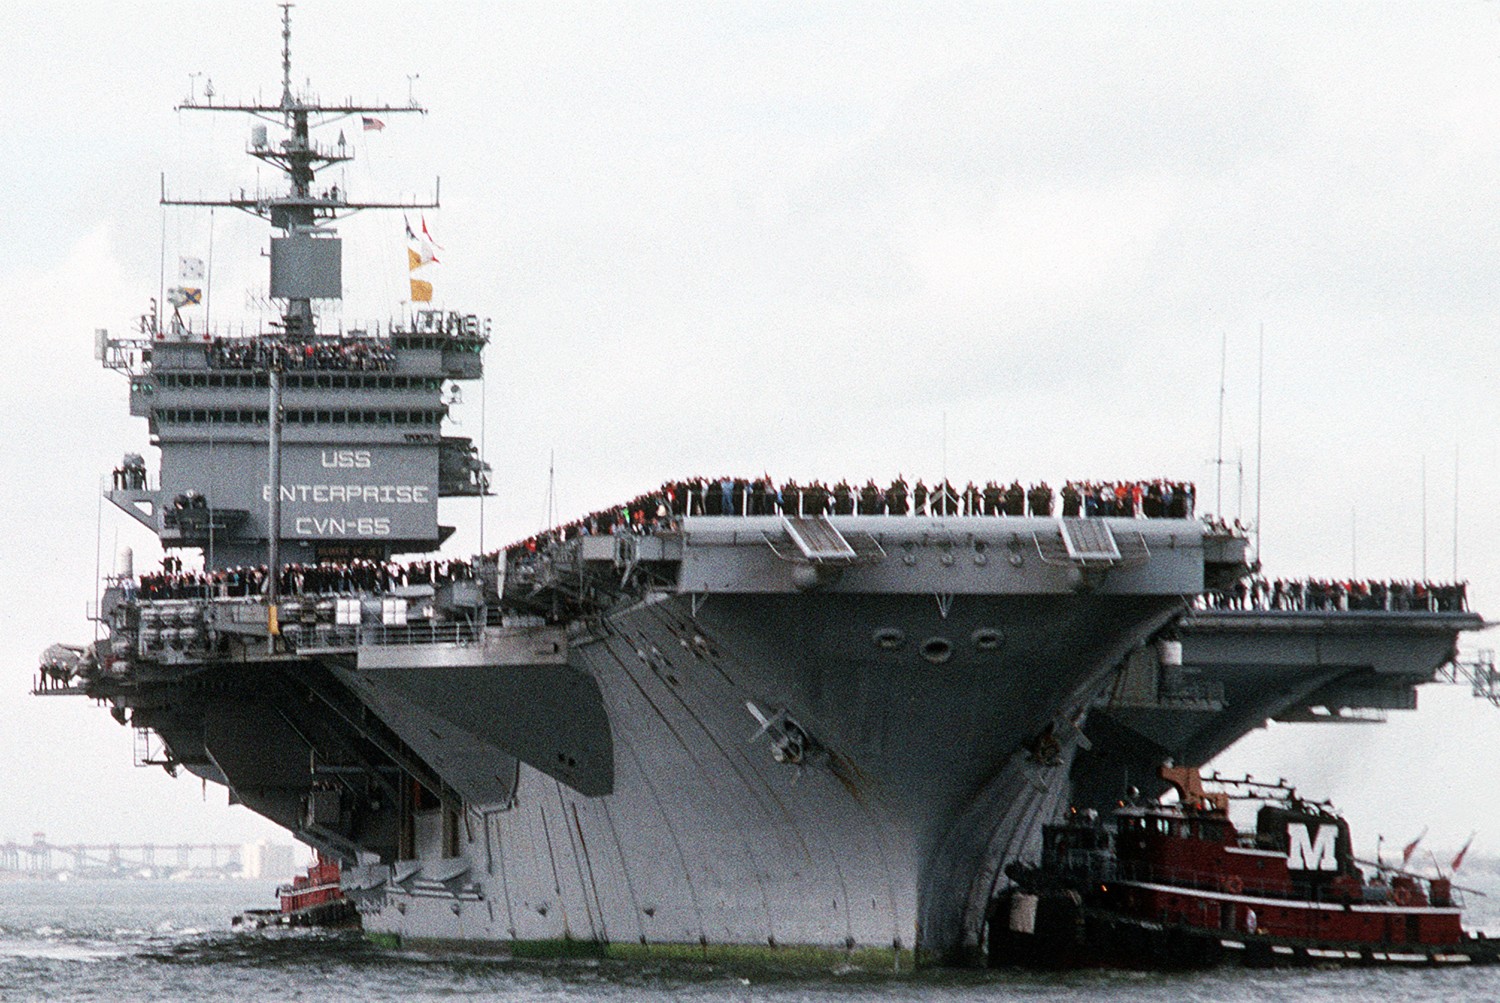 cvn-65 uss enterprise aircraft carrier us navy arriving norfolk 1990 102